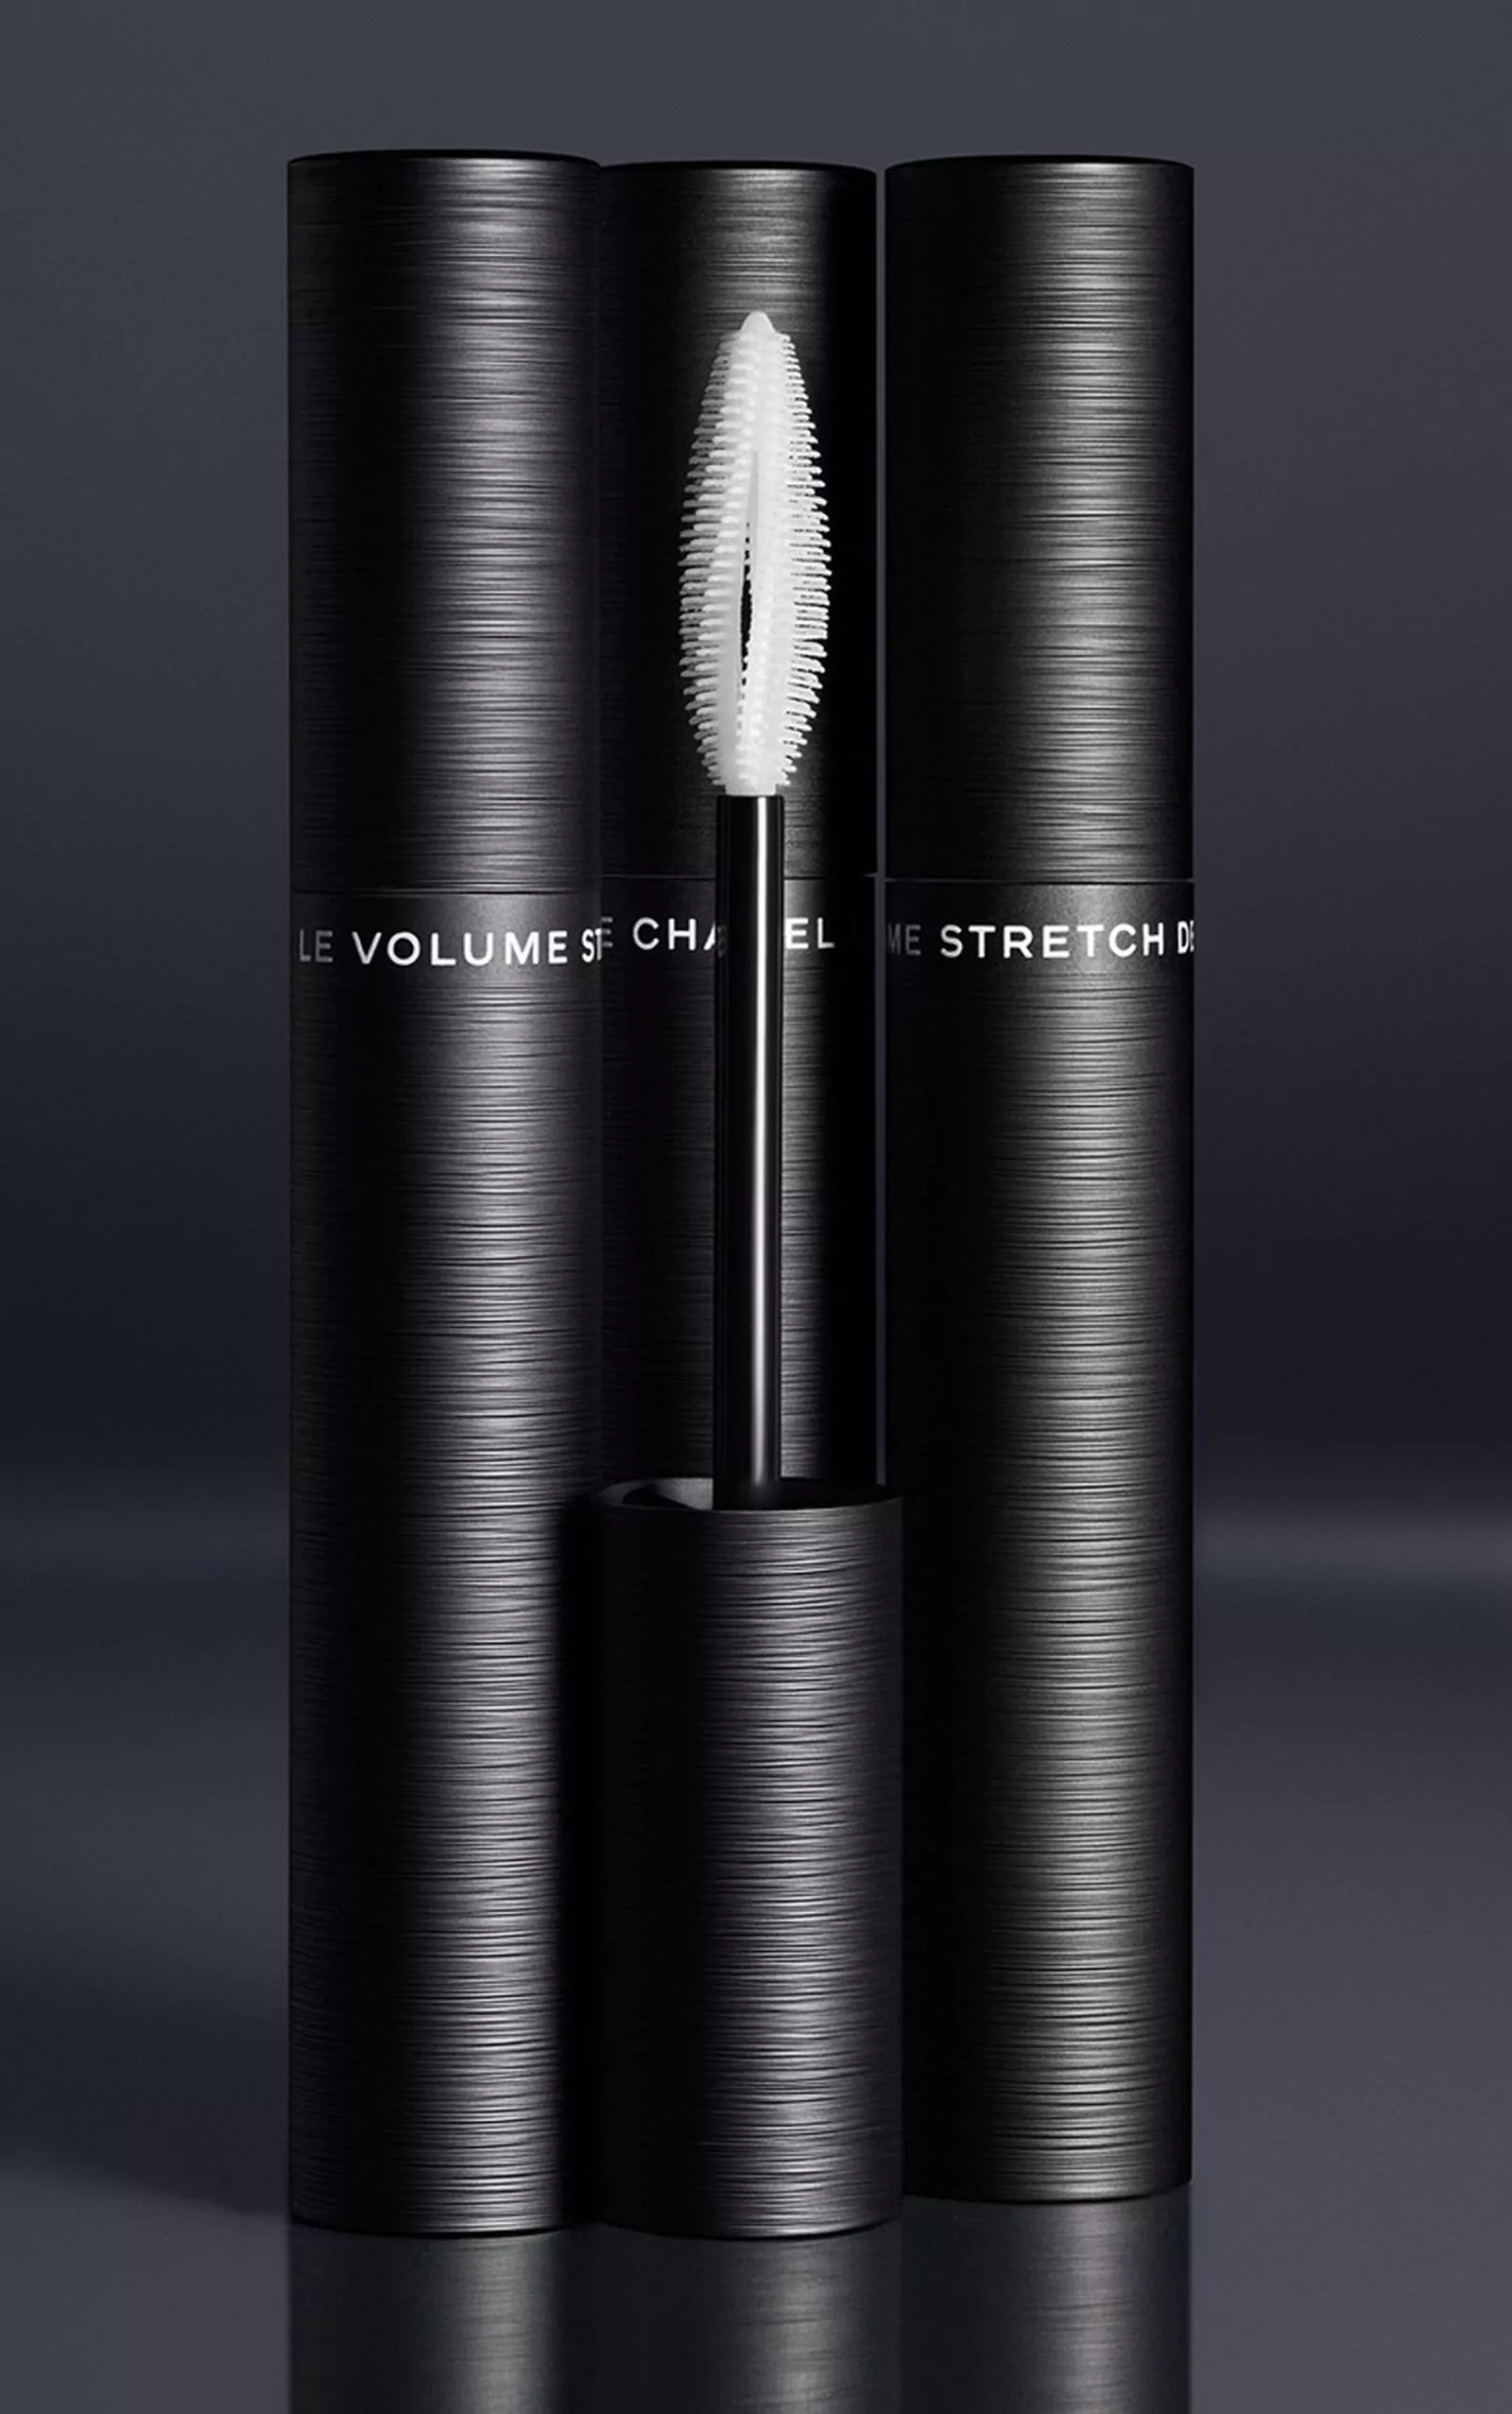 Le Volume Stretch de Chanel: тушь для удлинения и объема ресниц из новой коллекции Eyes 2020, фото 2